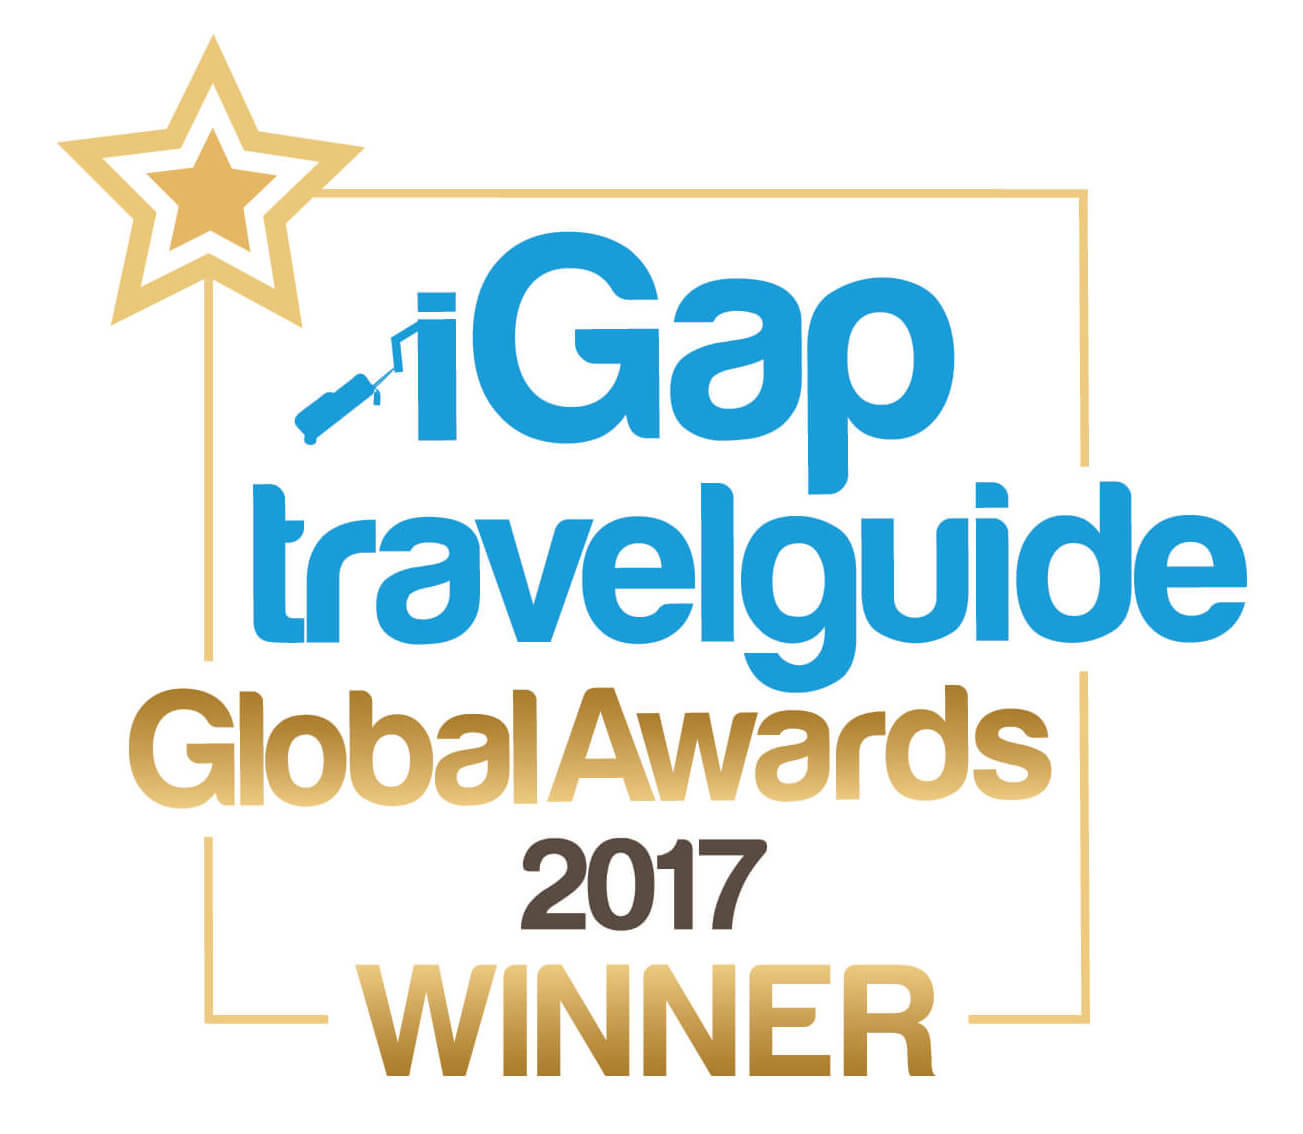 iGap travelguide Winner 2017